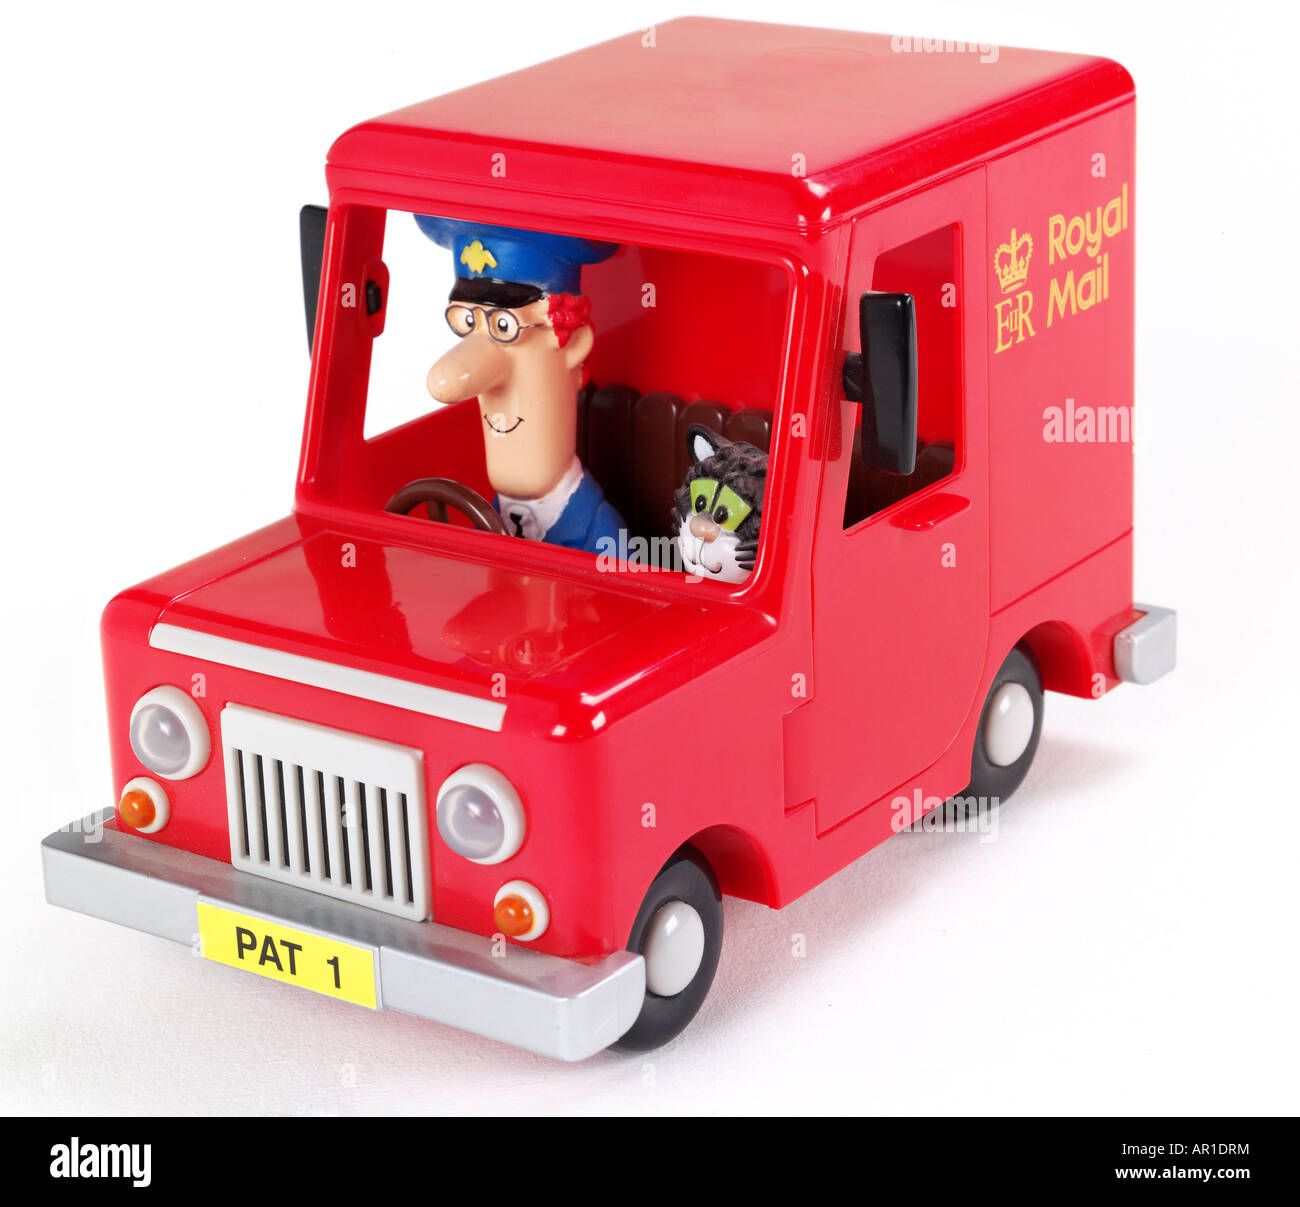 postman pat van toy